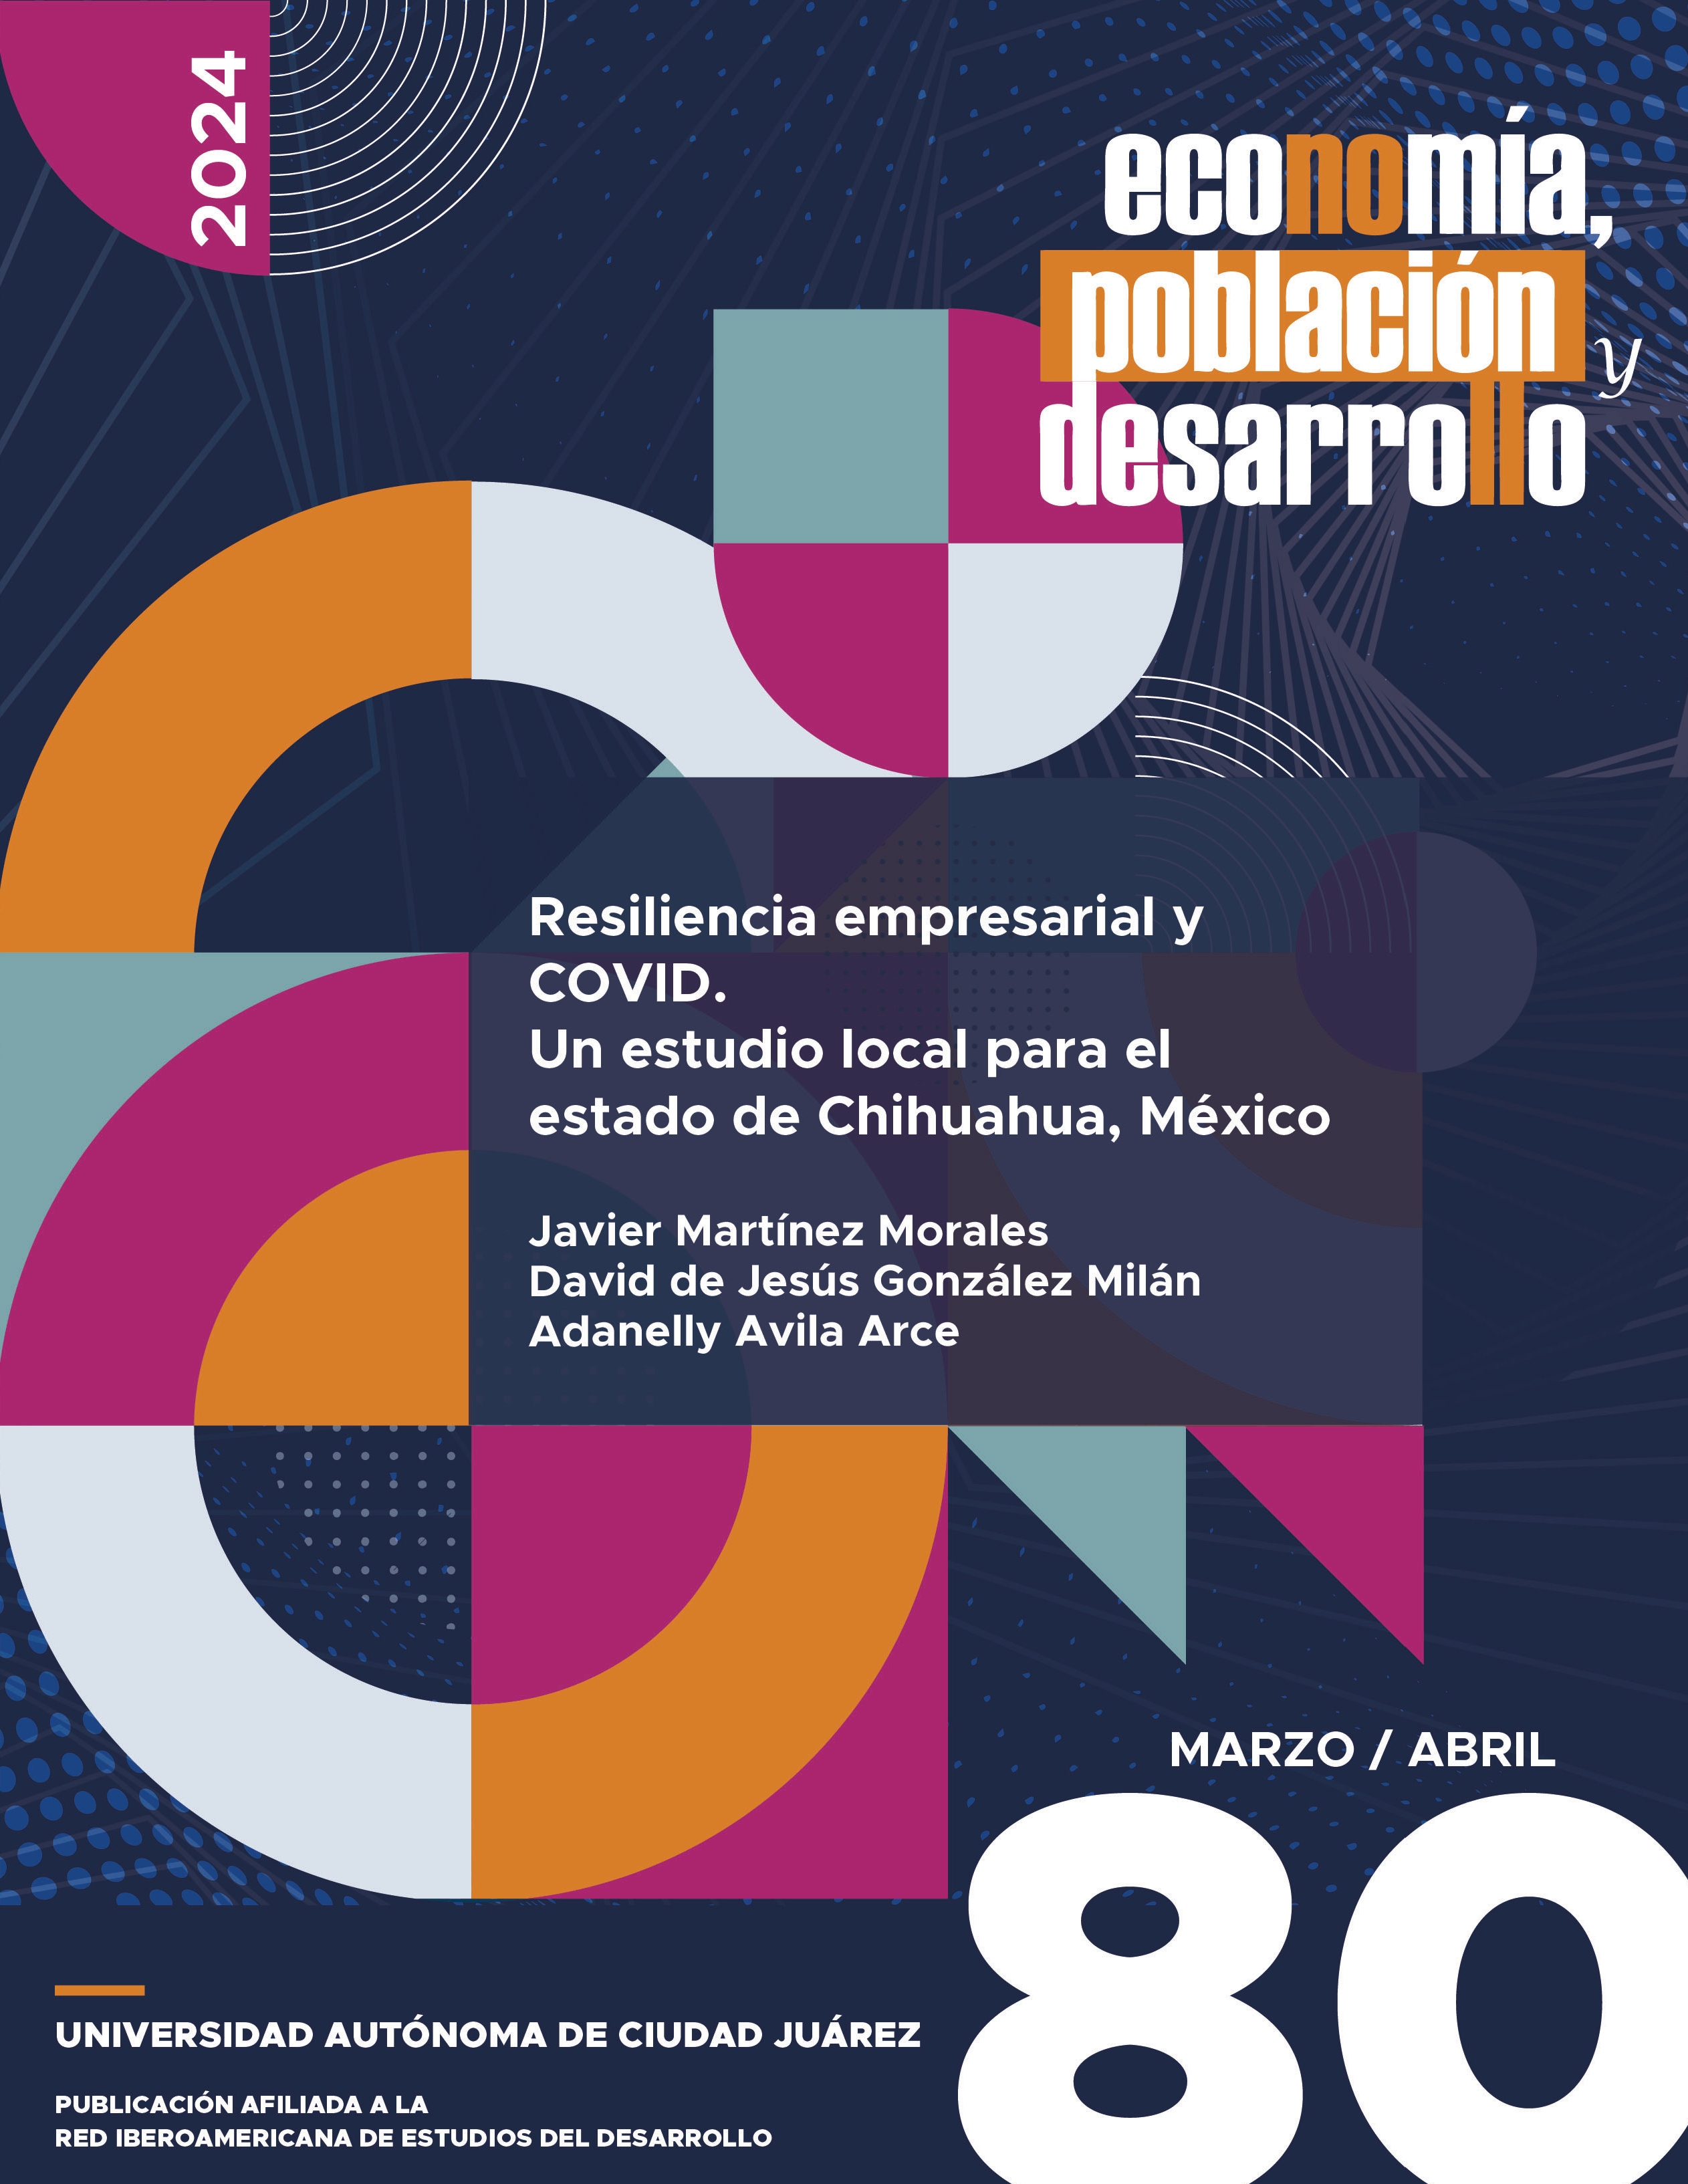 Resiliencia empresarial y COVID. Un estudio local para el estado de Chihuahua, México